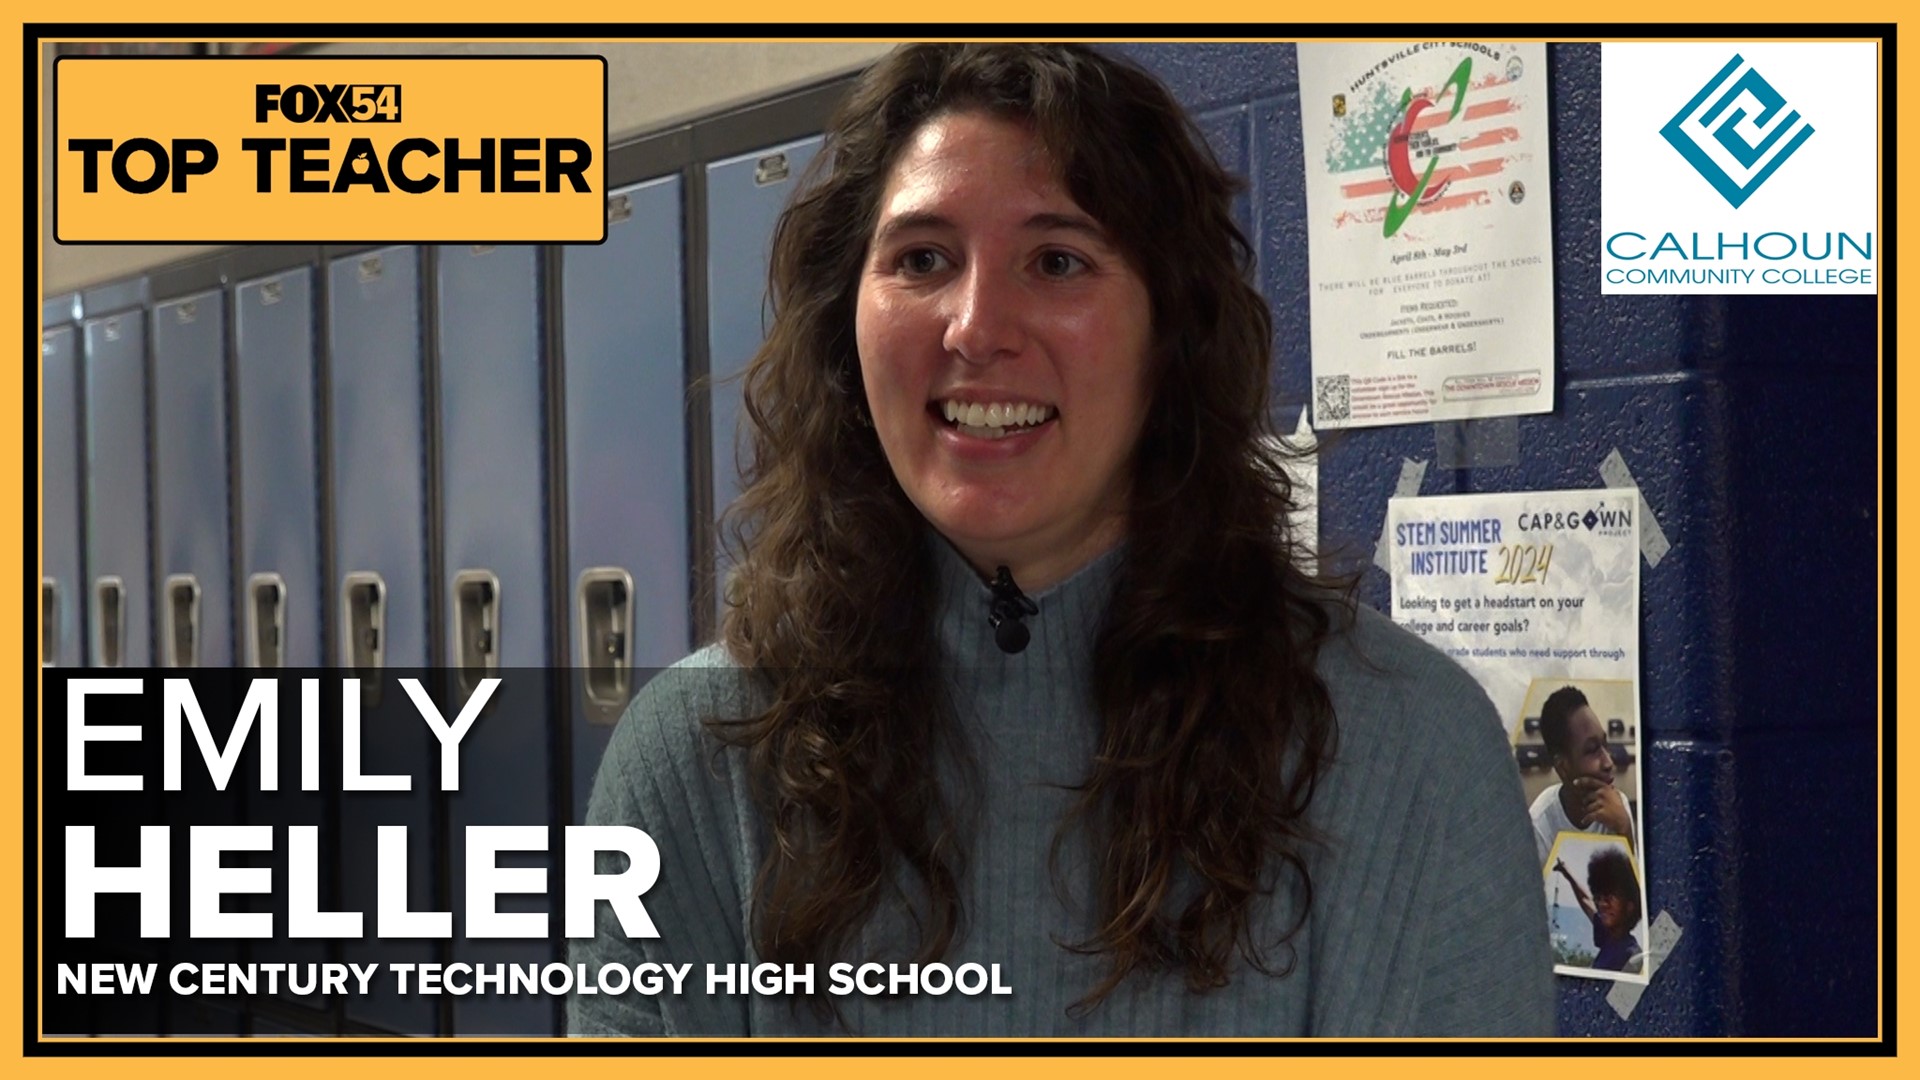 Emily Heller, FOX54 Top Teacher